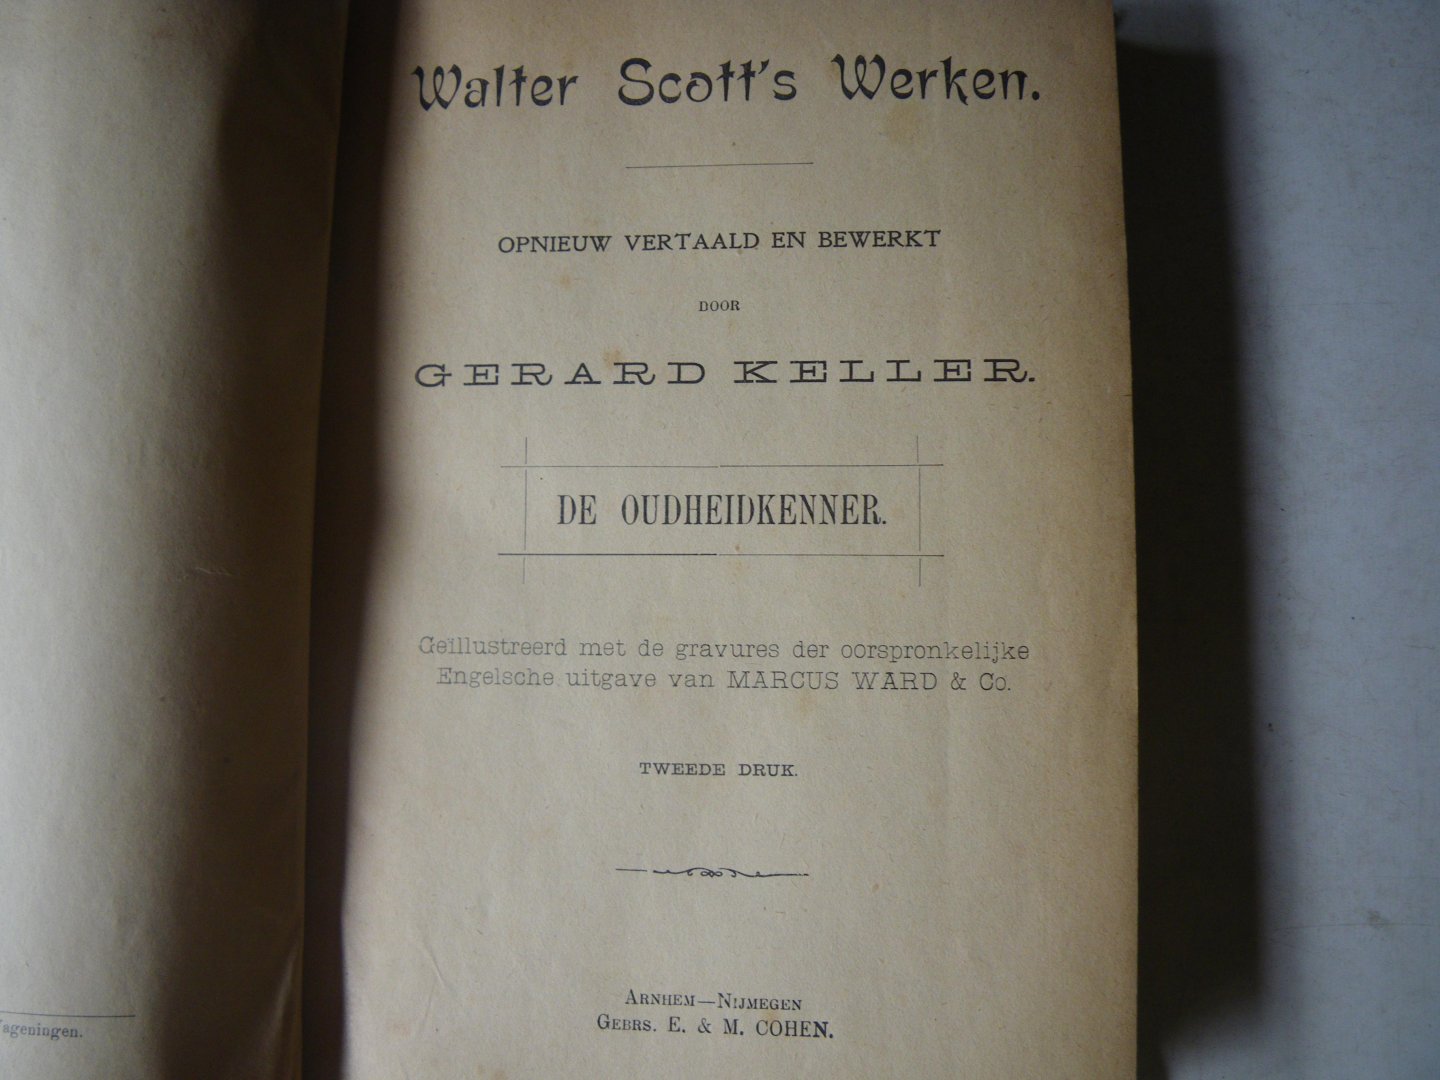 Walter Scoot vertaling: Keller Gerard - De oudheidkenner Geillustreed met de gravures der oorspronkelijke engelsche uitgave van Marcus Ward & co